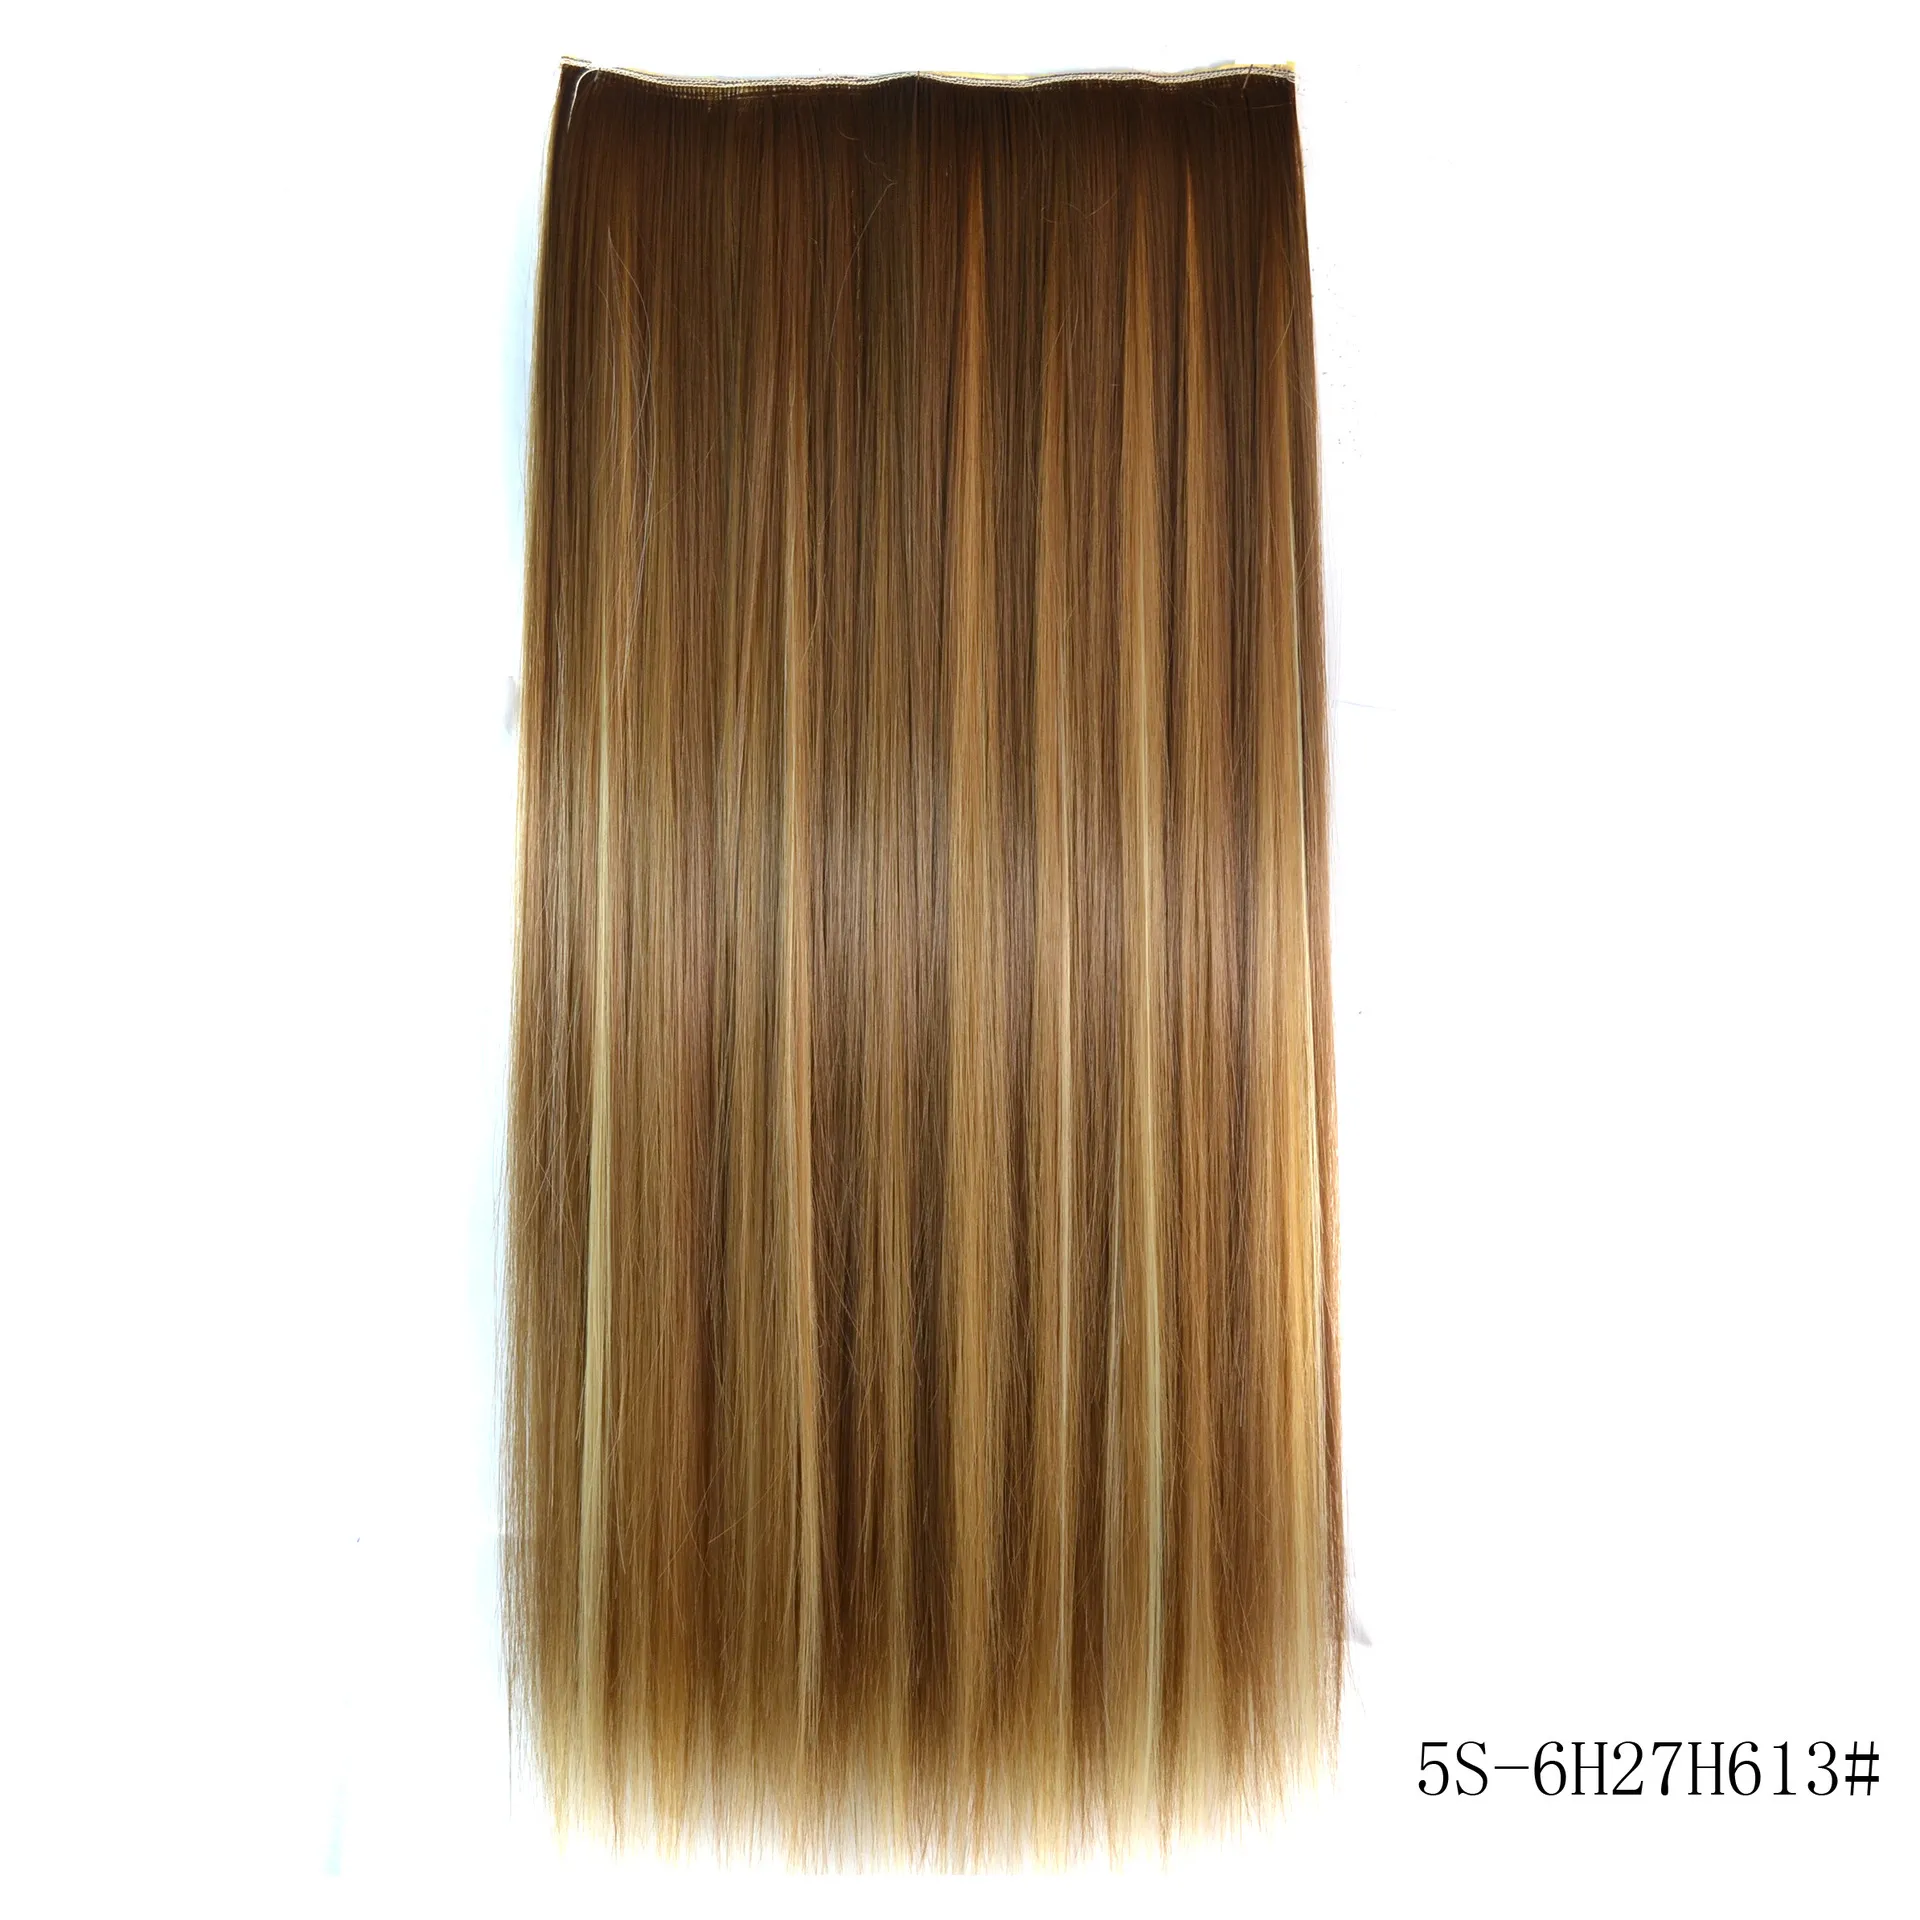 Extensions de cheveux synthétiques lisses et lisses, 24 pouces, cinq clips multicolores, résistants à la chaleur, 5121743